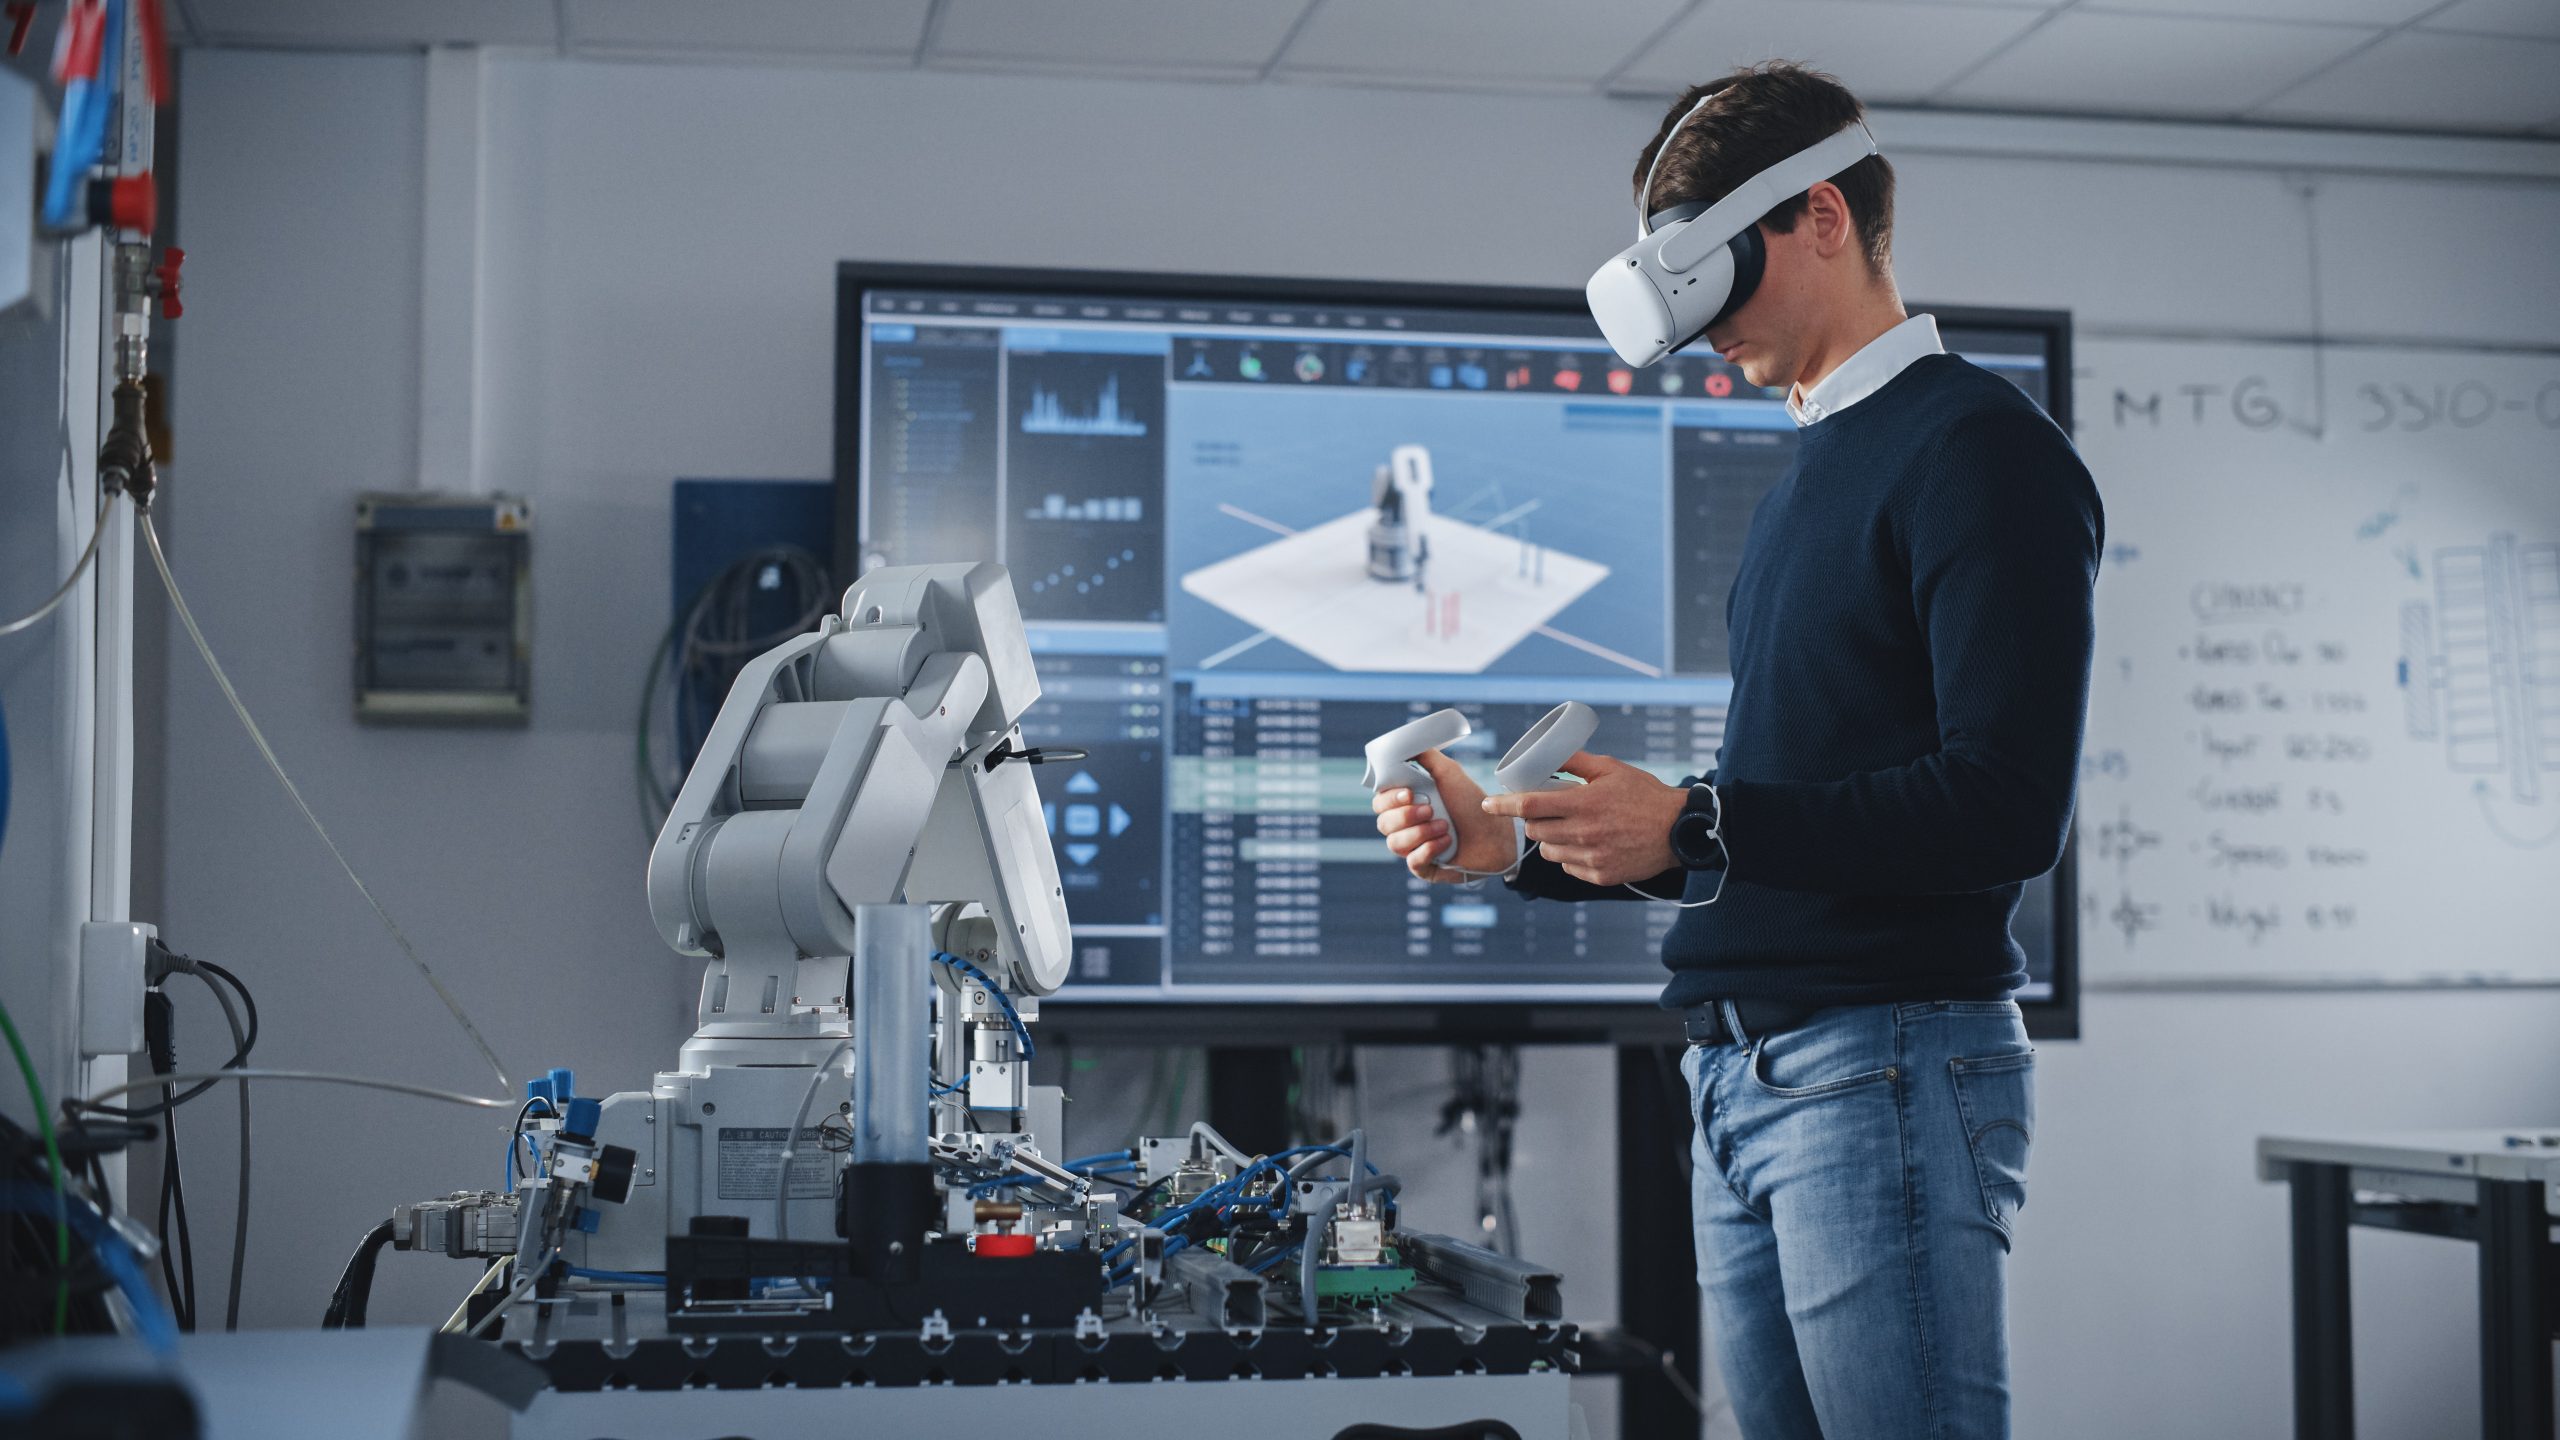 En el aula de una universidad de alta tecnología, un hombre que usa un casco VR y sostiene controladores se concentra en sus estudios de robótica.